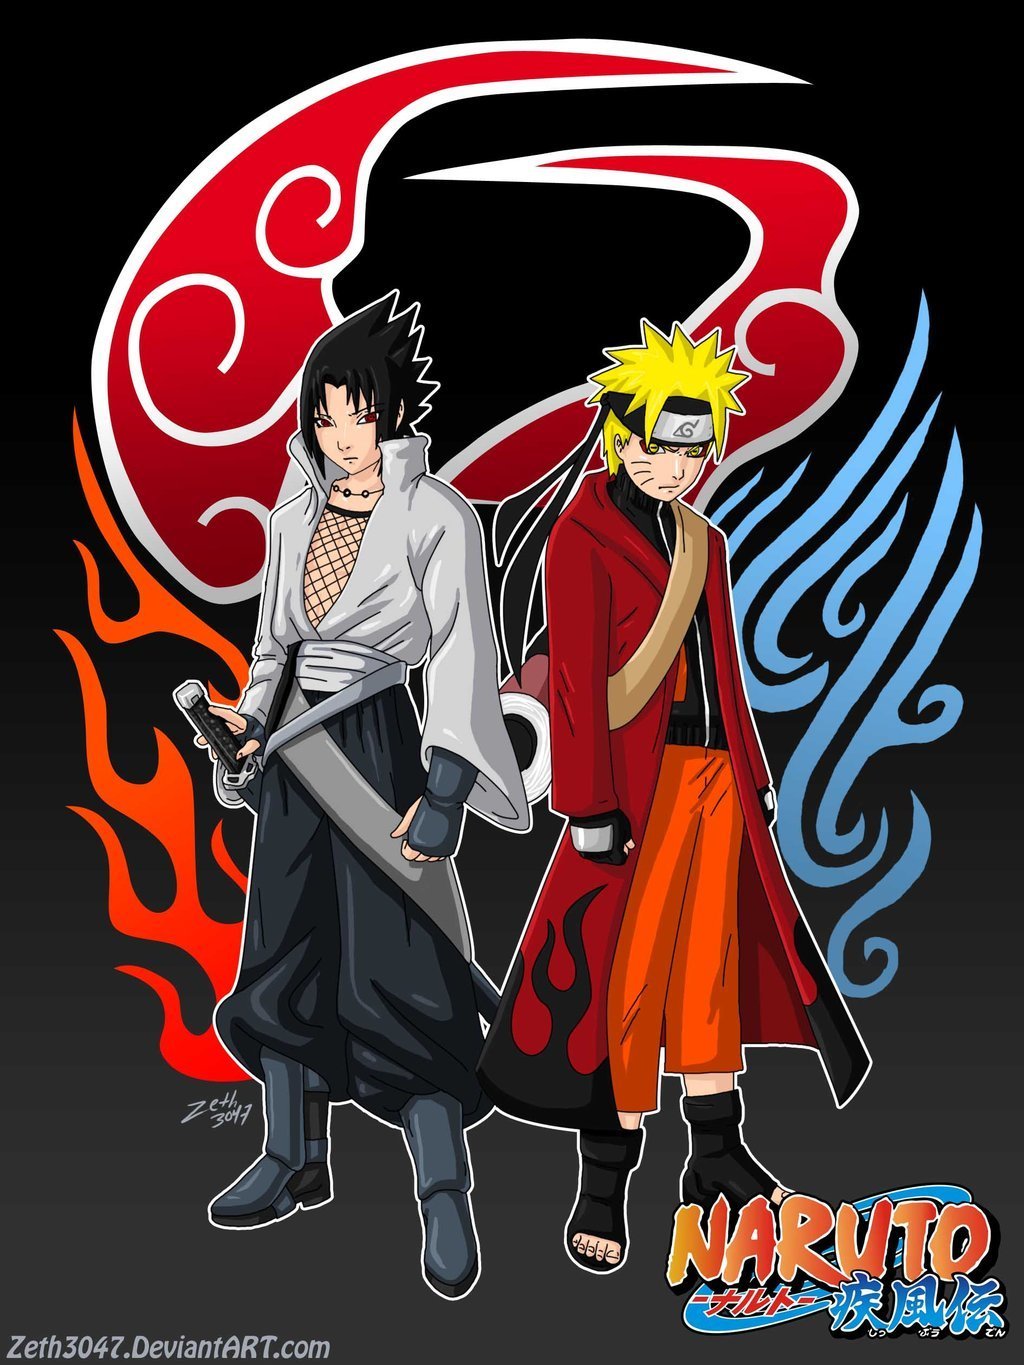 Gambar Lucu Naruto Menari Nari Genit Blog Seo Evil Download